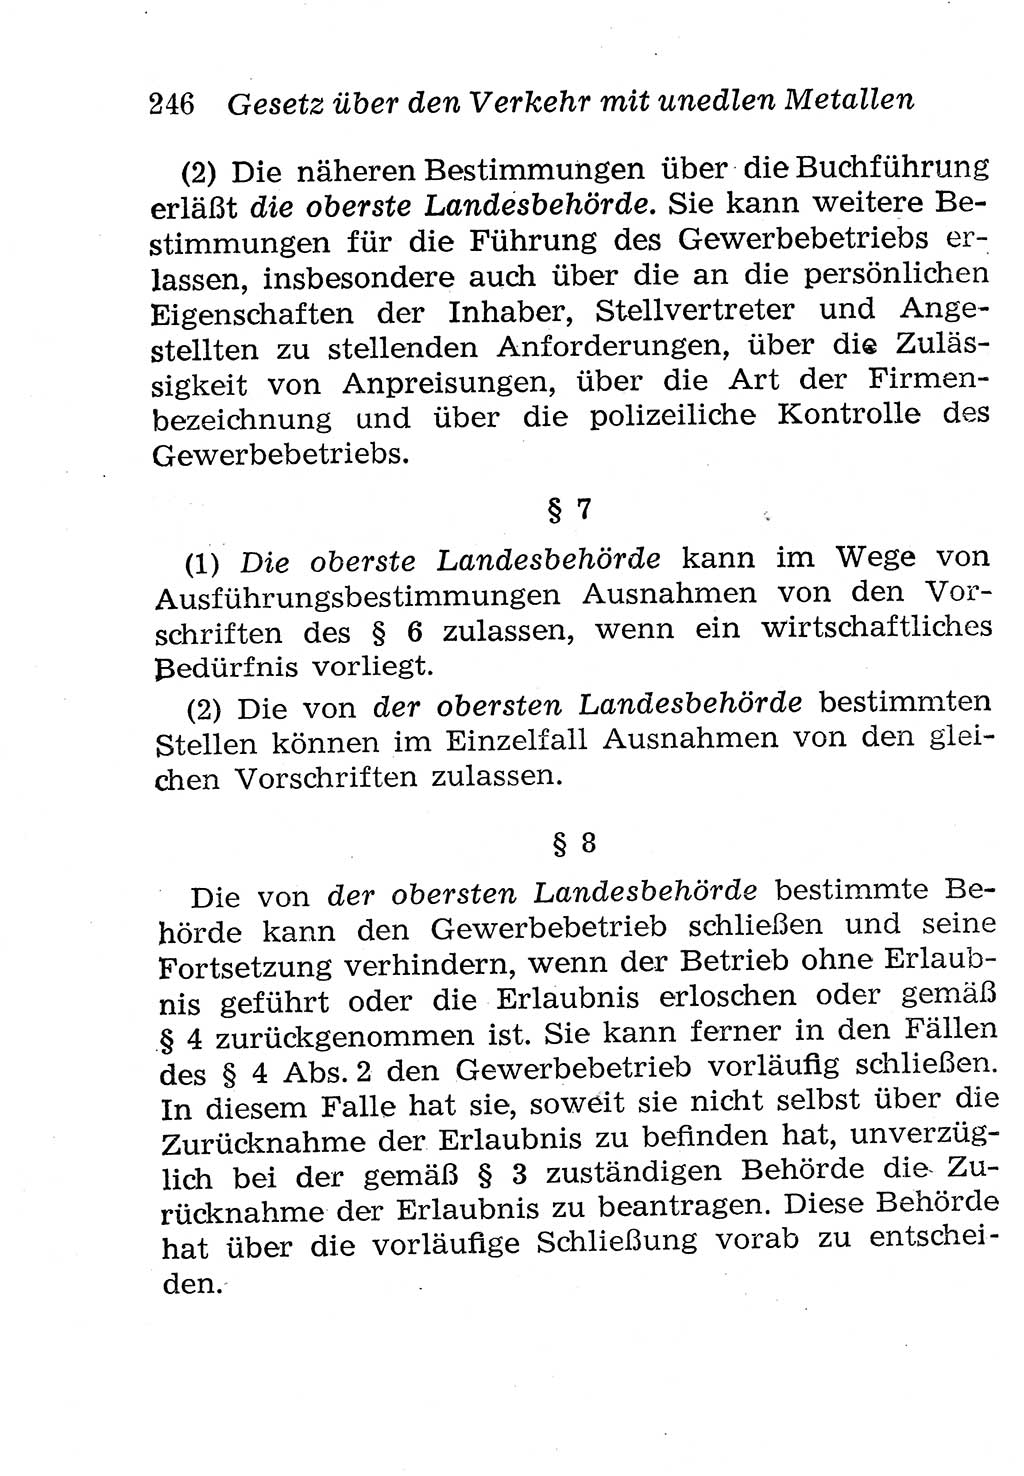 Strafgesetzbuch (StGB) und andere Strafgesetze [Deutsche Demokratische Republik (DDR)] 1958, Seite 246 (StGB Strafges. DDR 1958, S. 246)